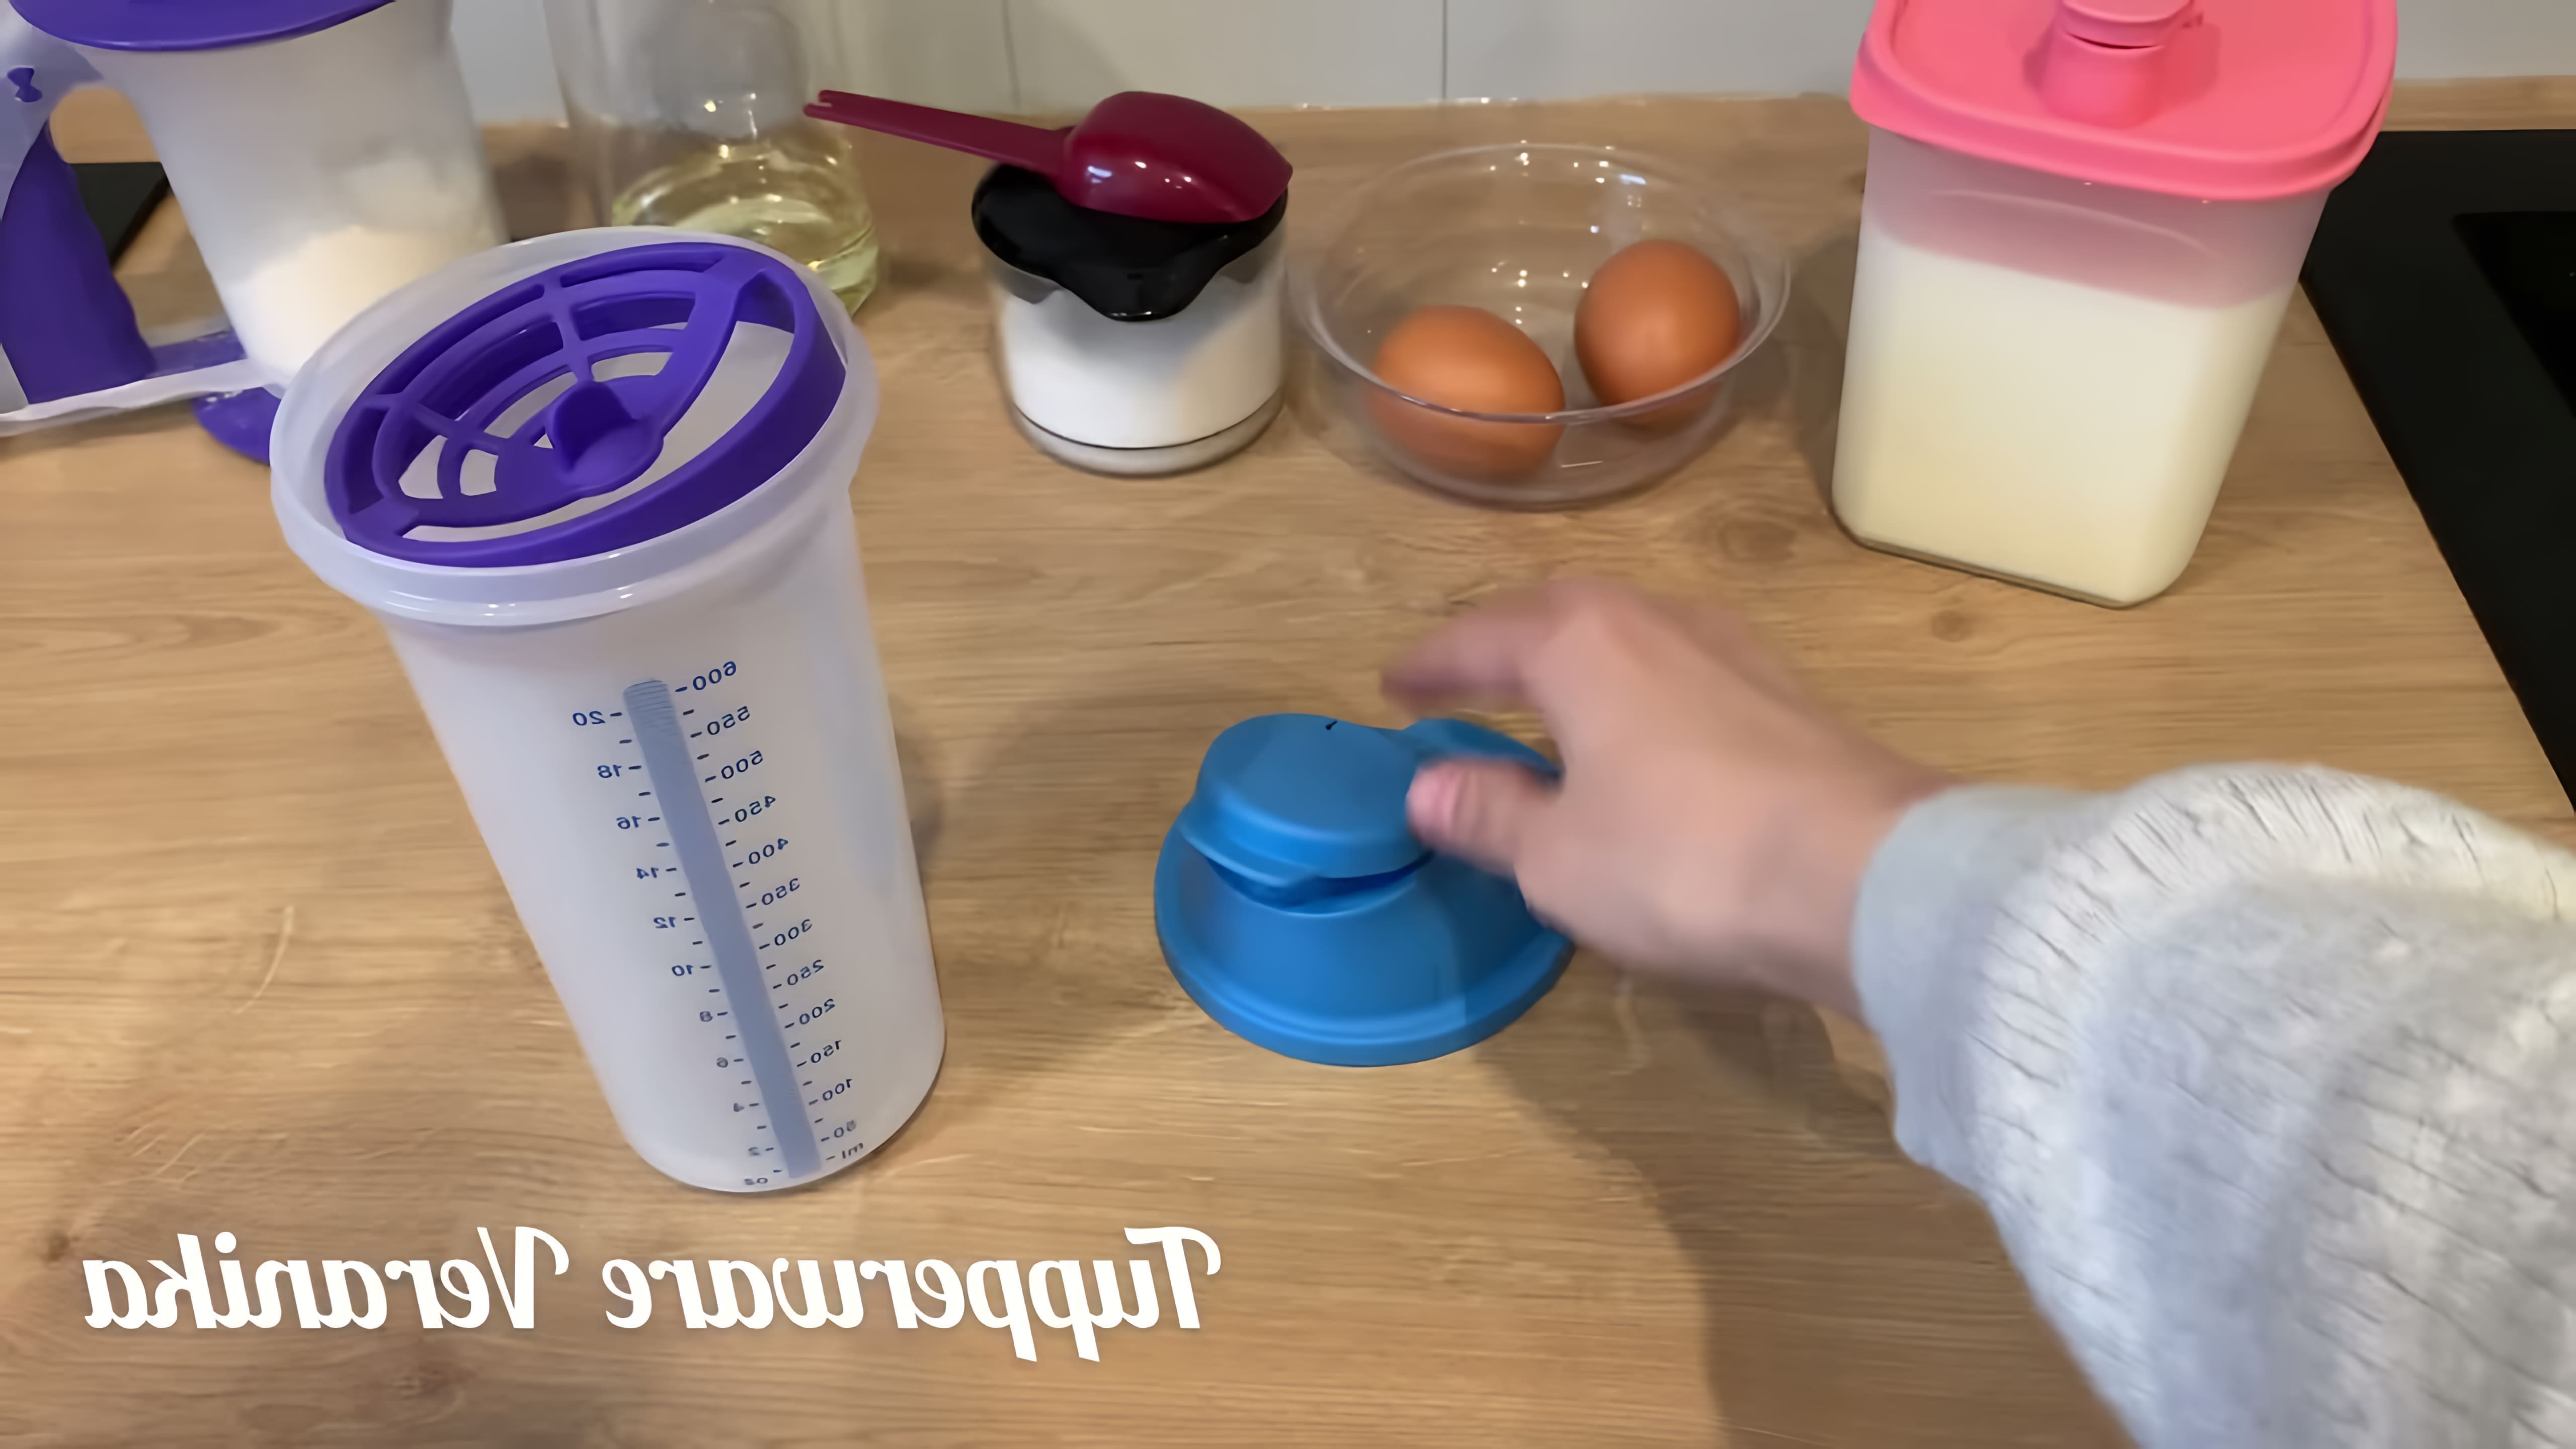 В данном видео демонстрируется процесс приготовления теста для блинов с помощью шейкера Tupperware